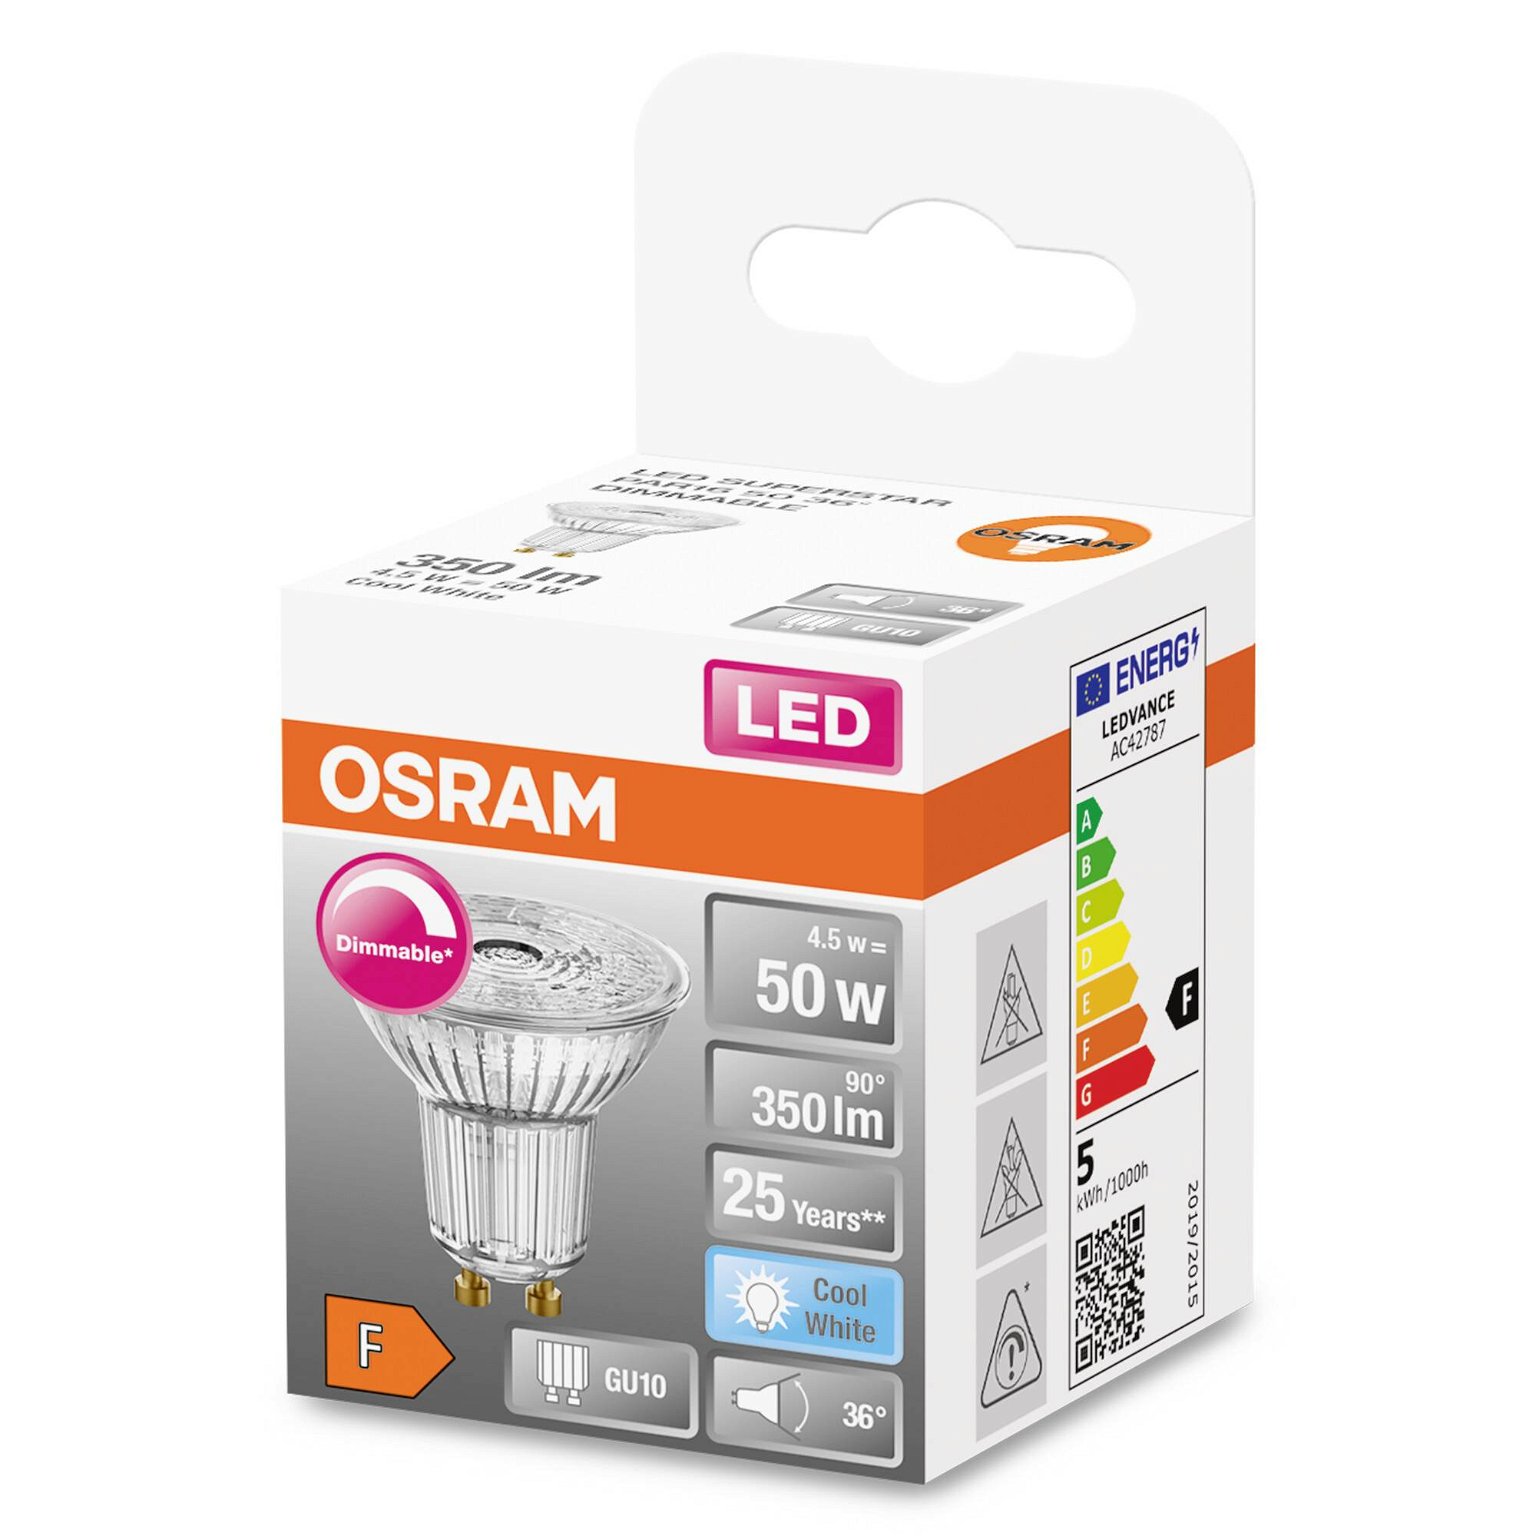 LED lemputė OSRAM, GU10, PAR16 50, reflektorinė, 4,5W, 4000K, 36°, 350 lm, dimeriuojama - 2